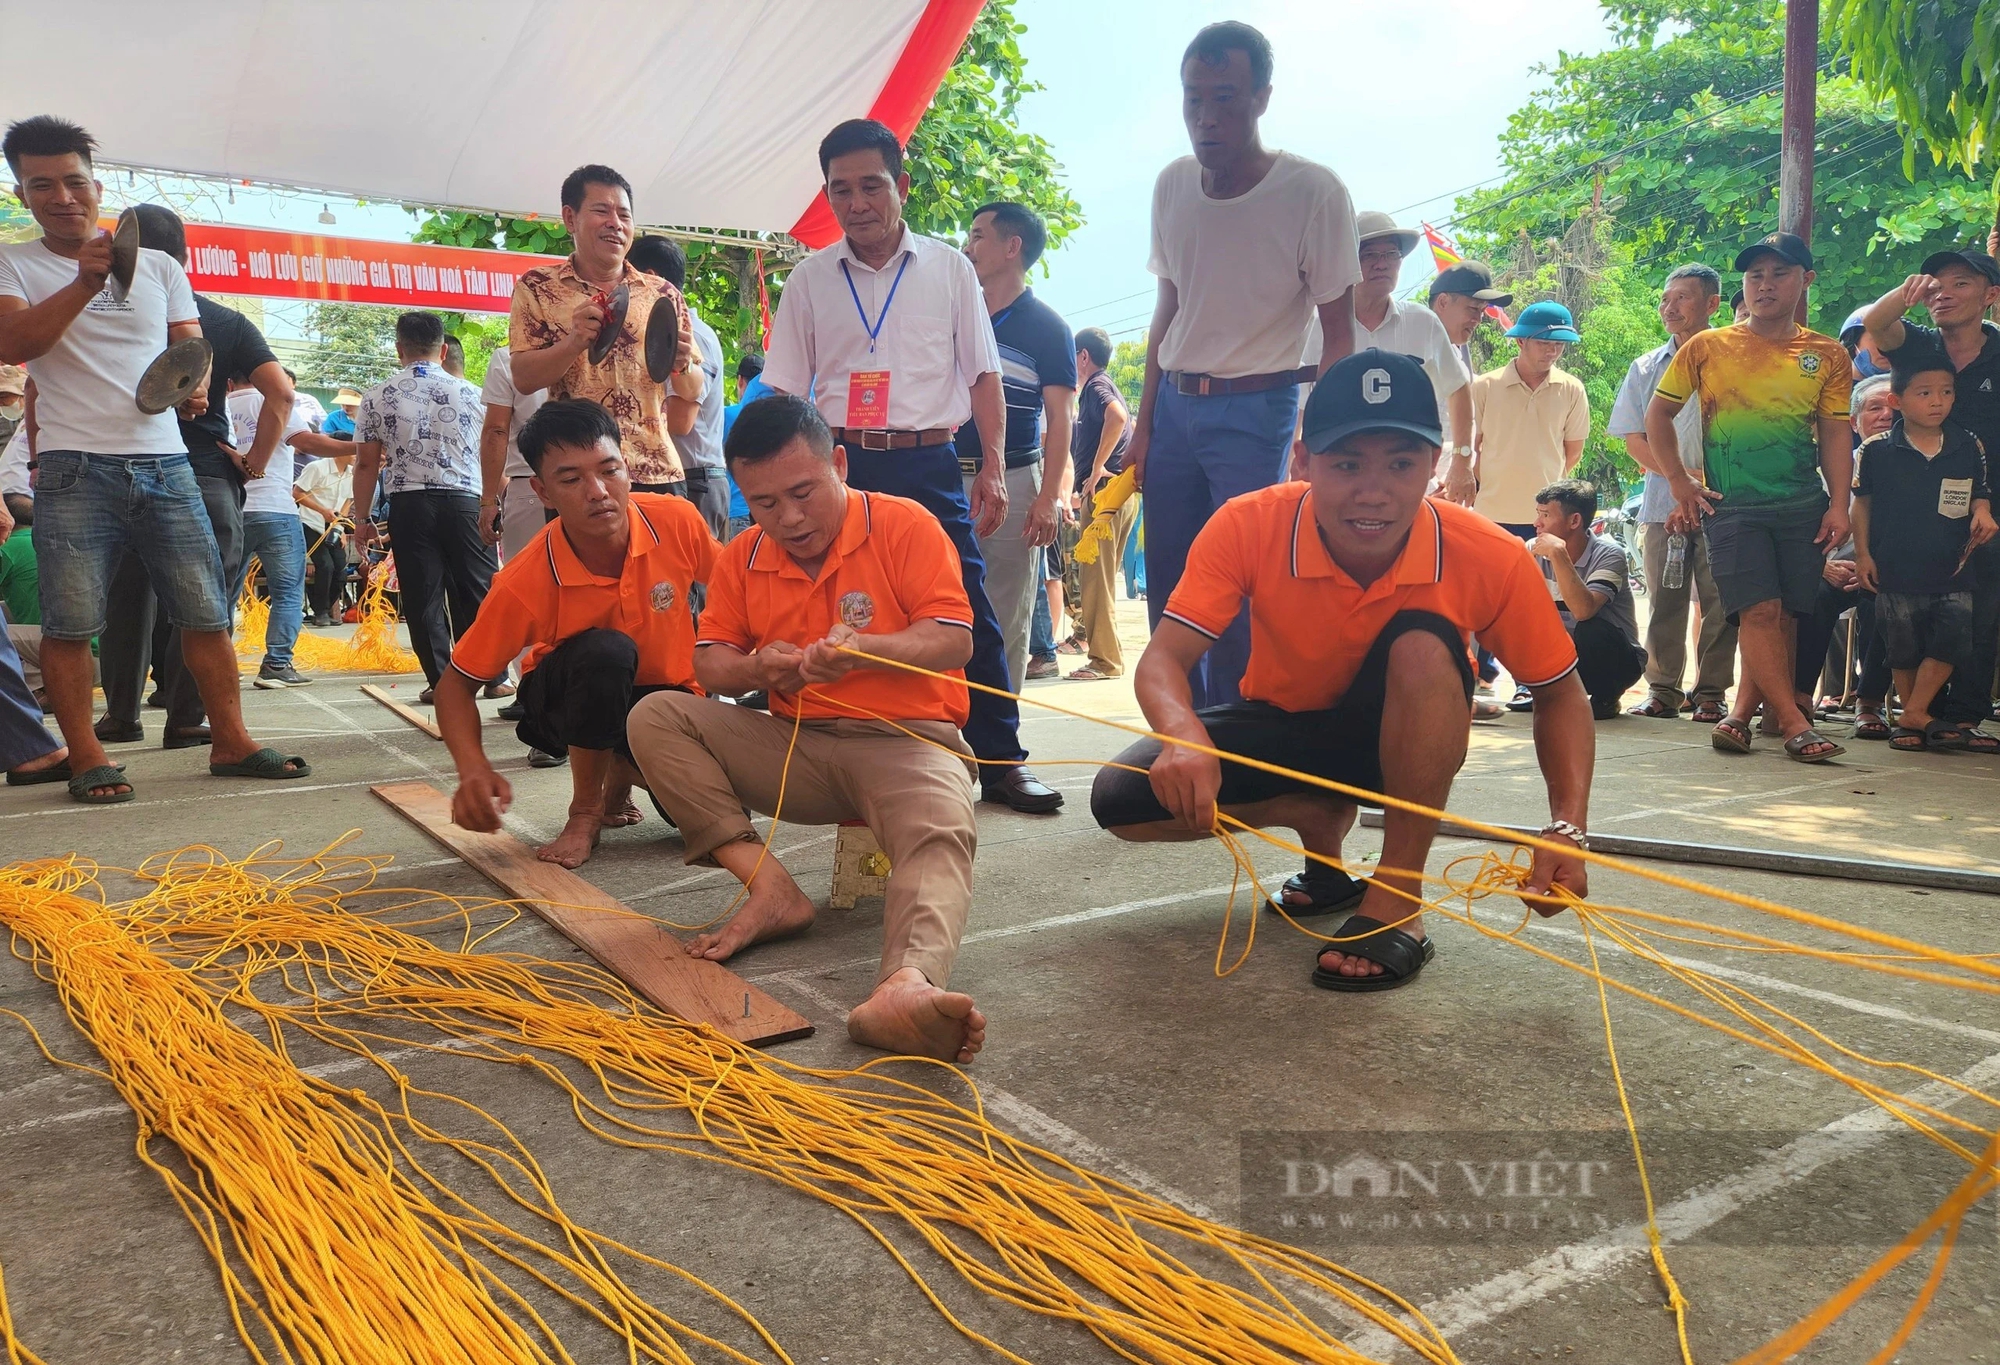 Cả làng biển Nghệ An cổ vũ đàn ông đan lưới, phụ nữ nướng cá, tất cả cùng tranh tài- Ảnh 2.